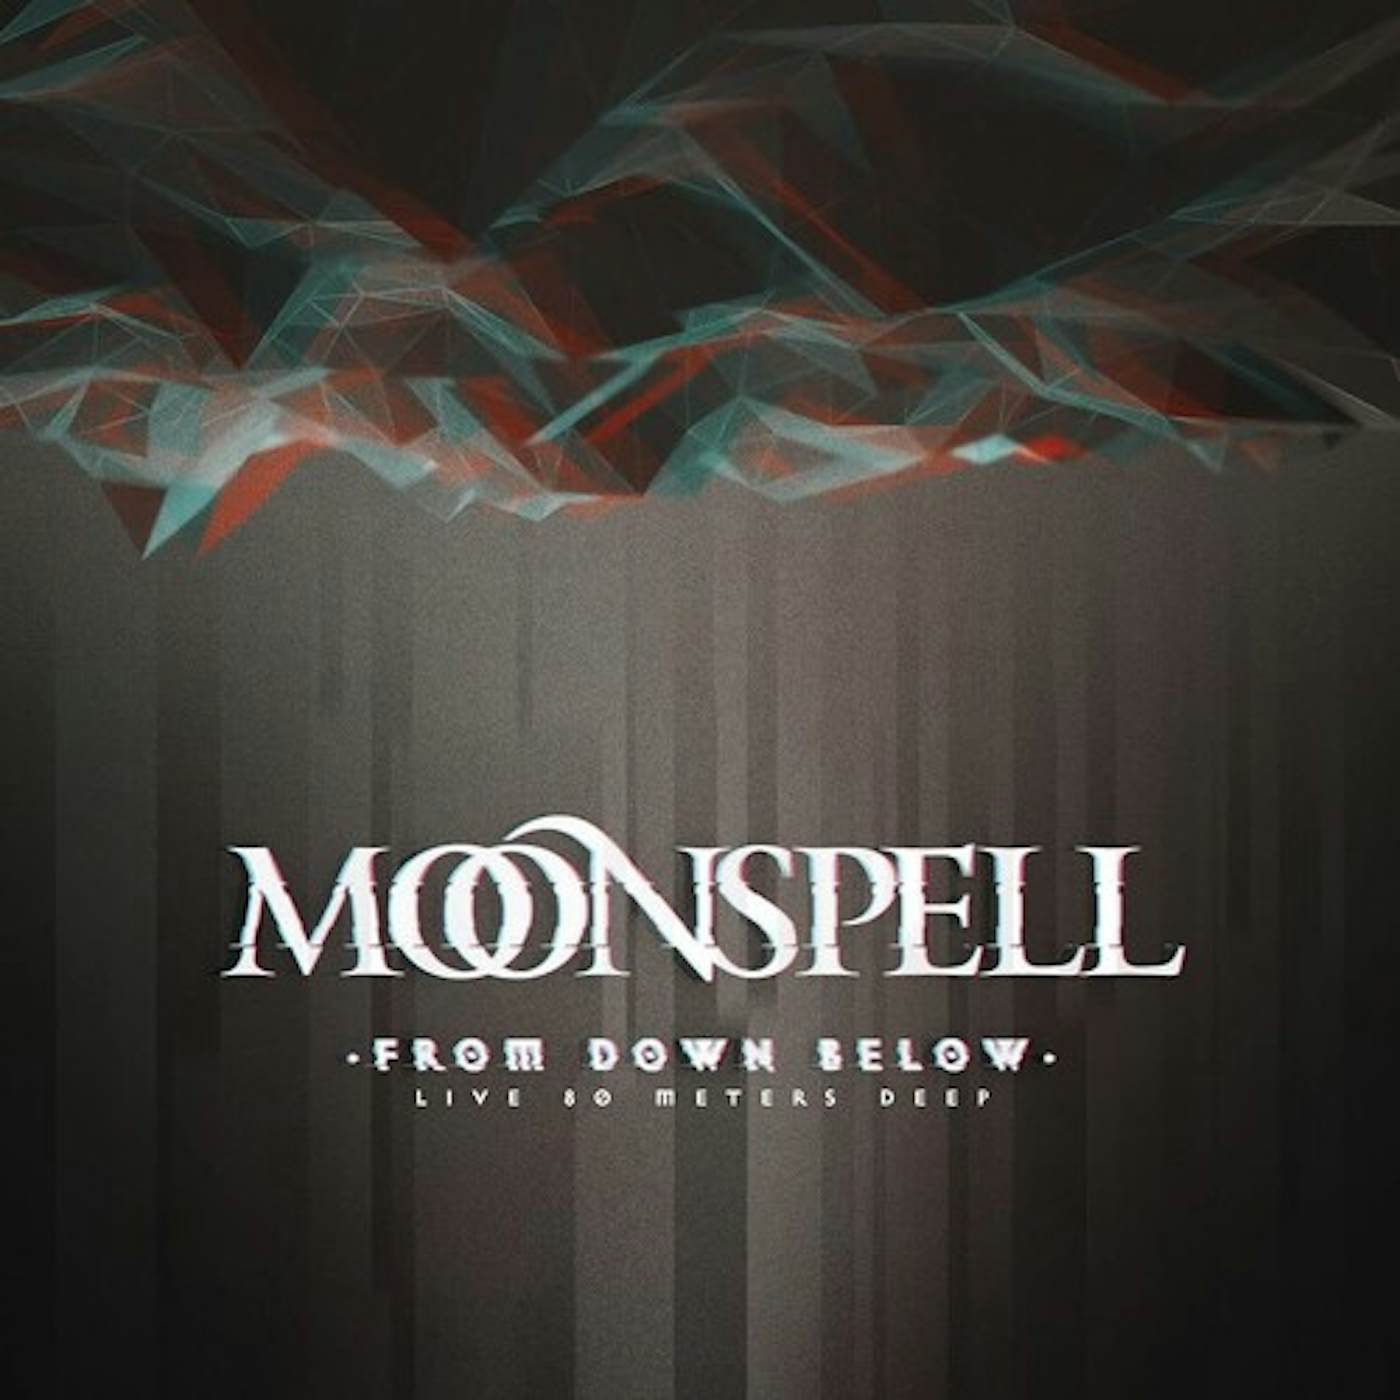 Moonspell FROM DOWN BELOW - LIVE 80 METERS DEEP Blu-ray